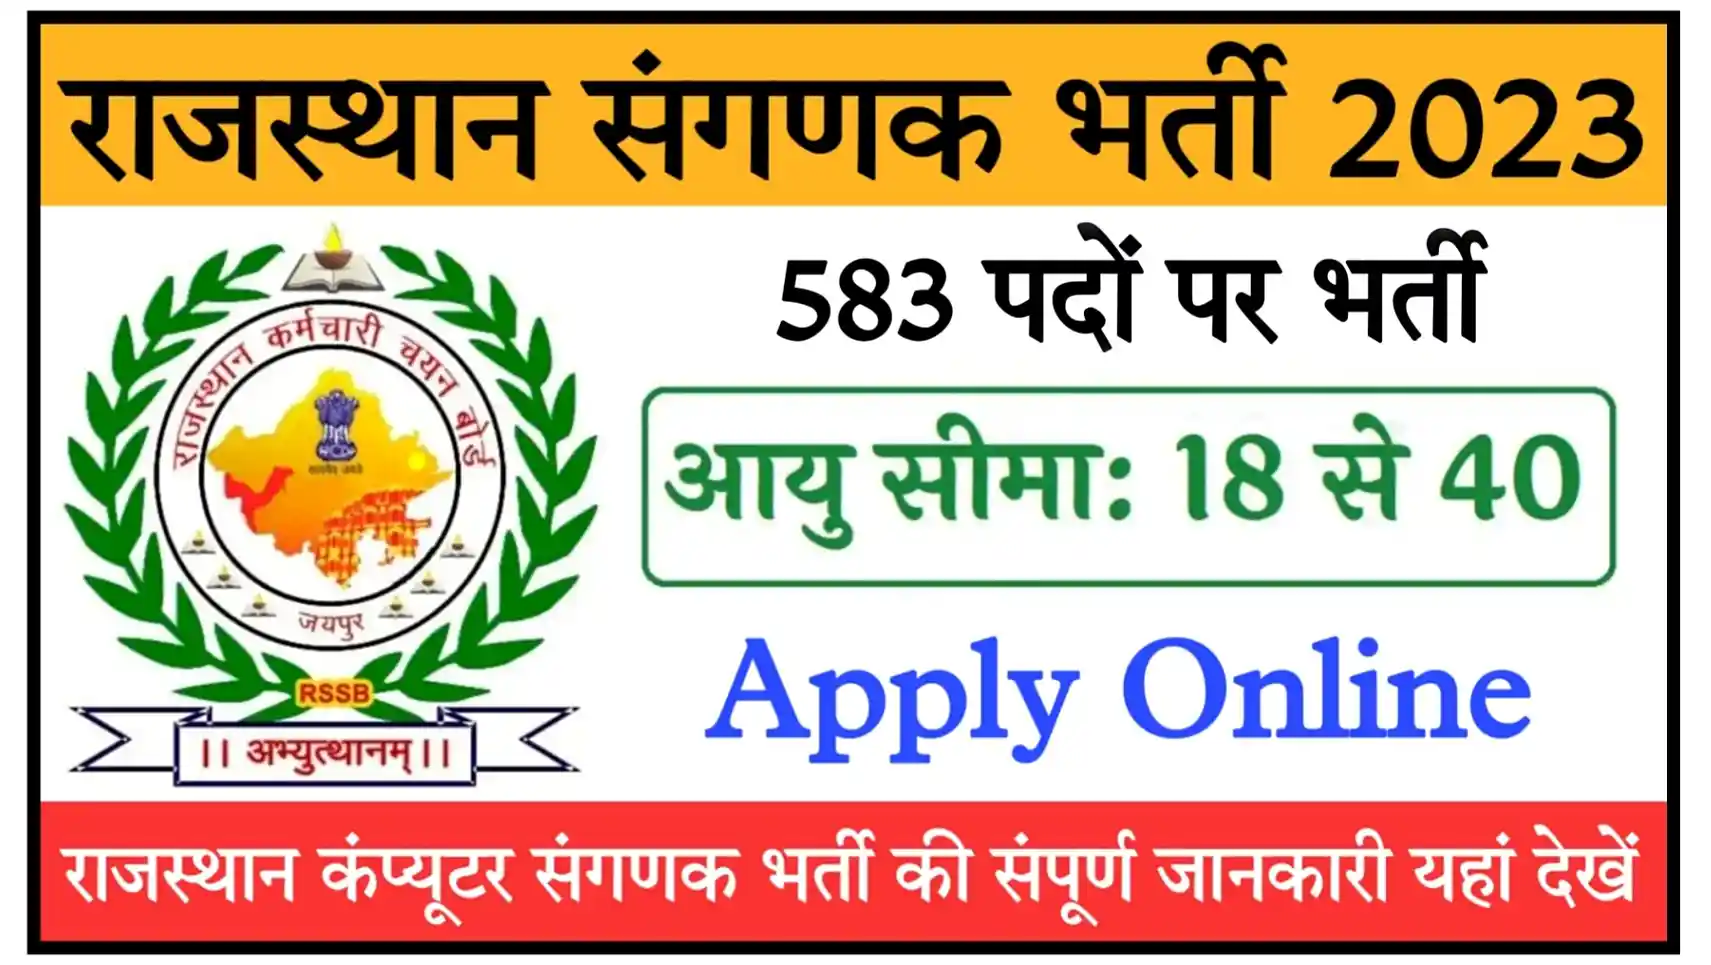 Rajasthan Sanganak Recruitment 2023 Notification (583 Posts) Exam Date, Syllabus Visit All Details